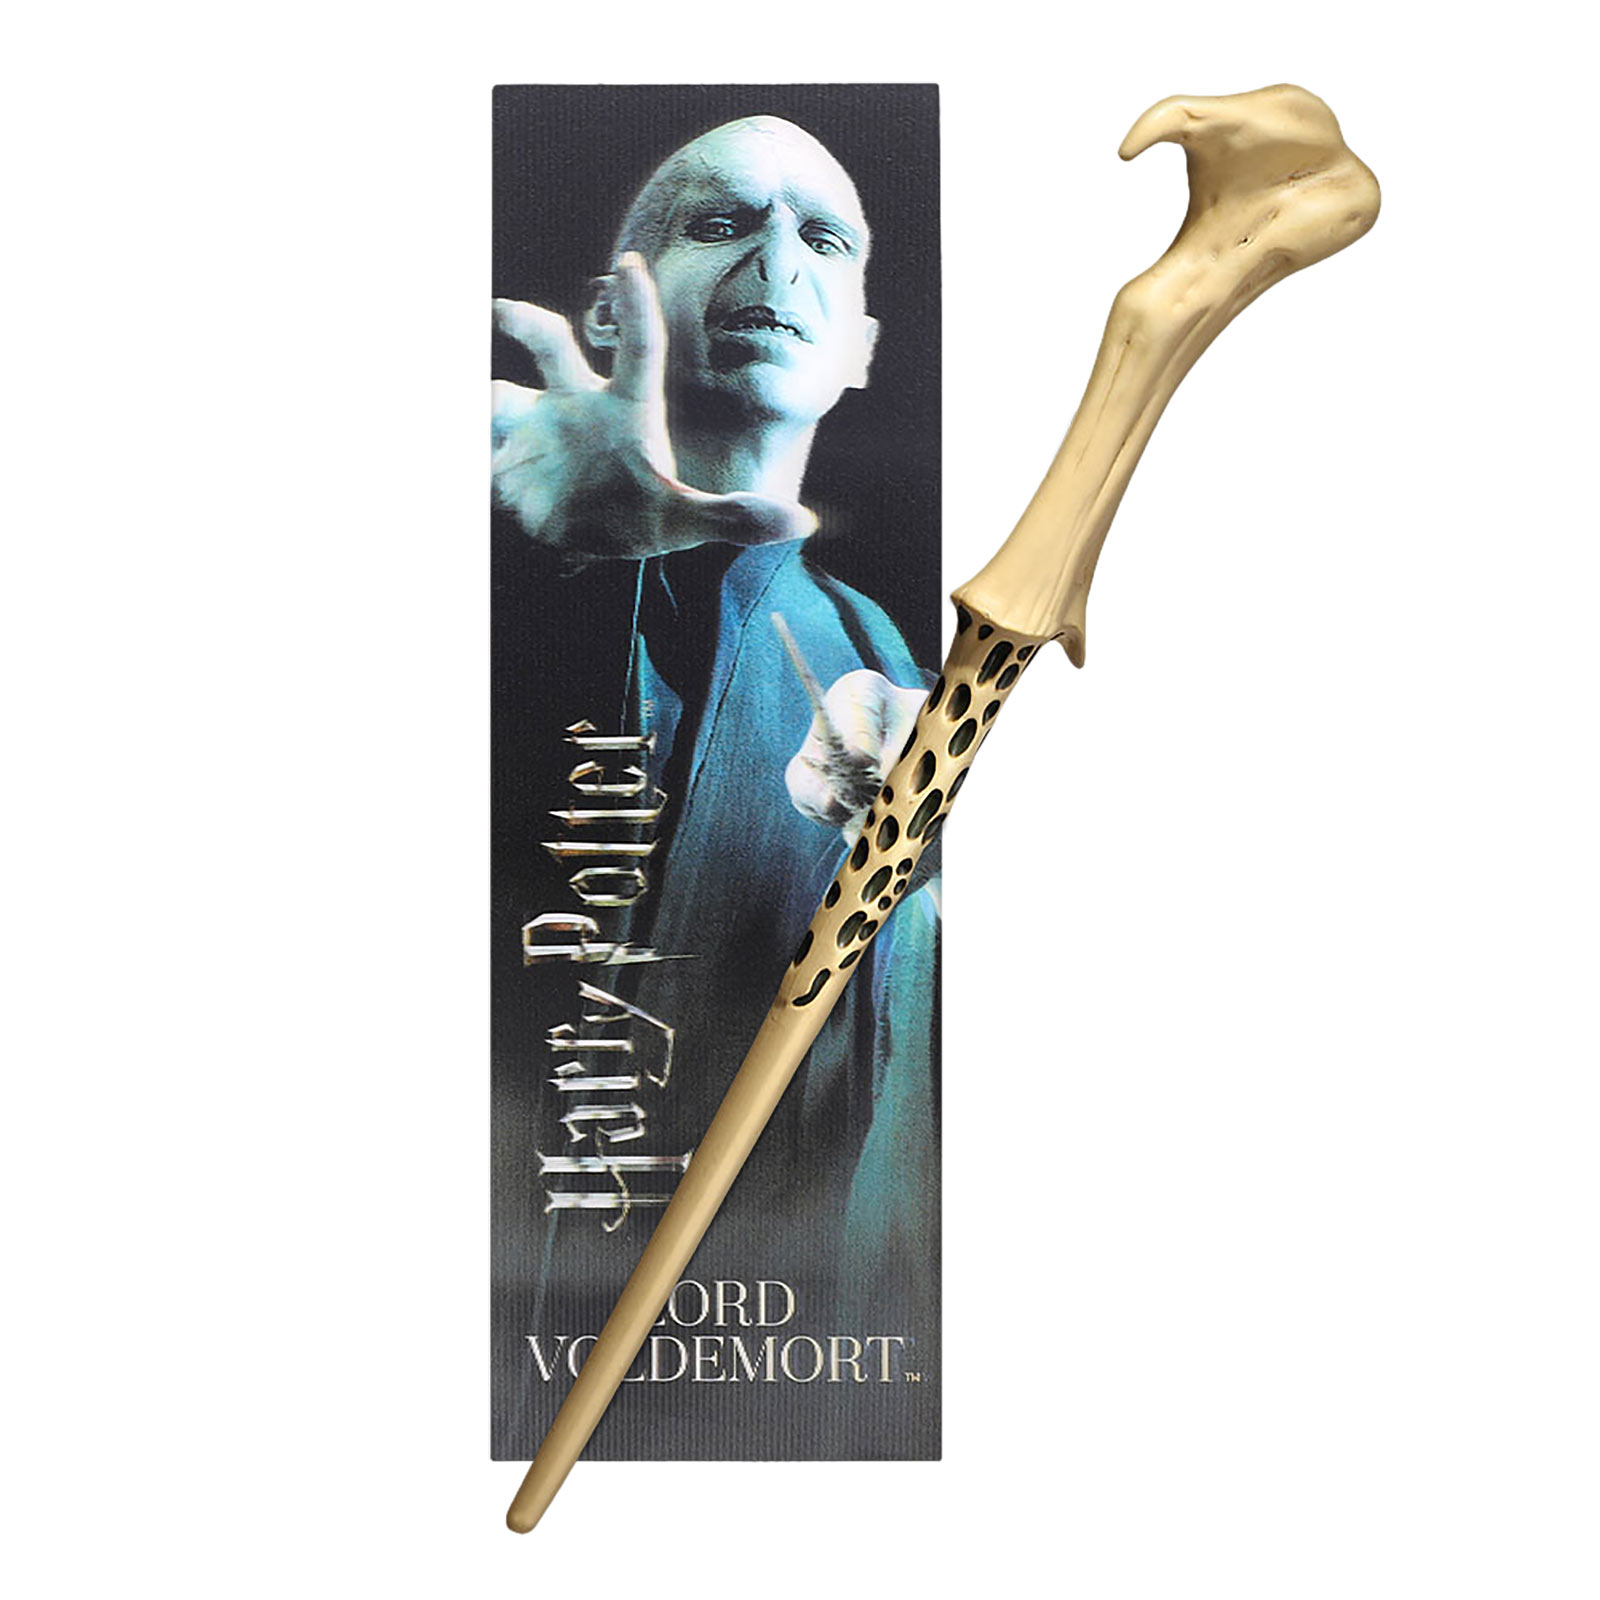 Voldemort Toverstaf voor Jonge Tovenaars met Bladwijzer - Harry Potter